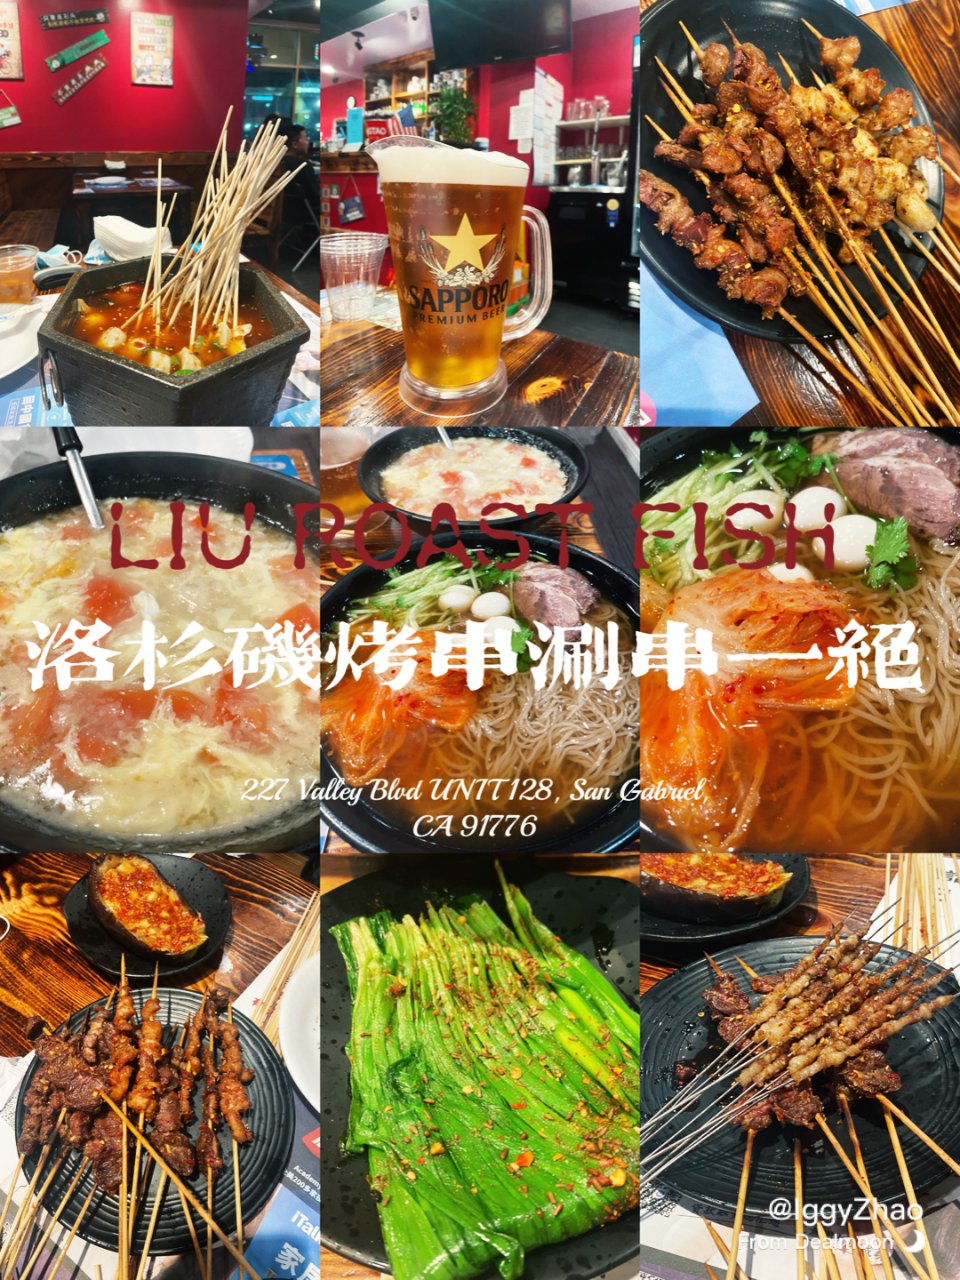 老刘家烤鱼烤串连锁店 | Liu Roast Fish